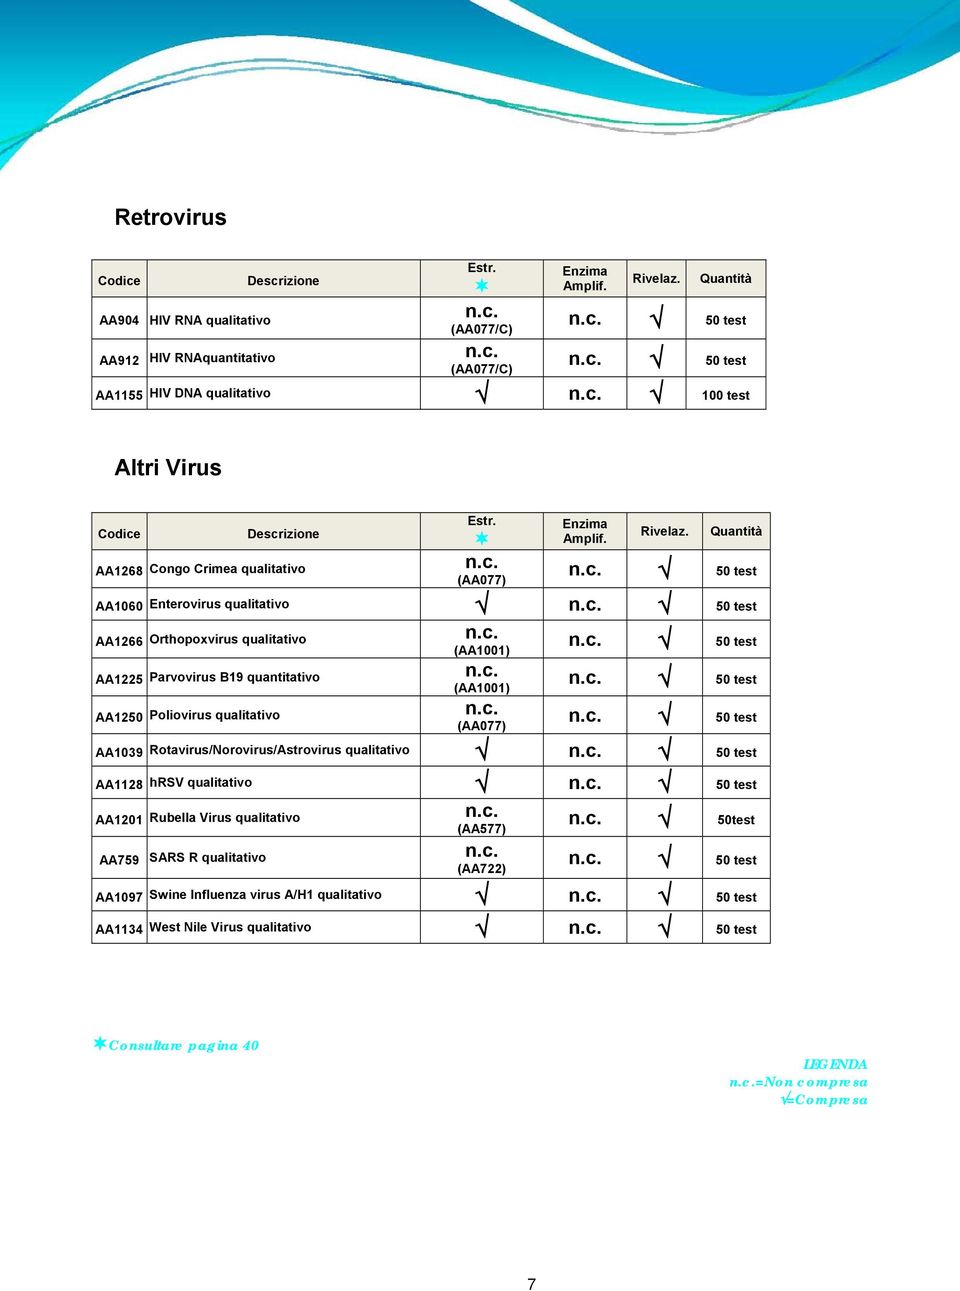 50 test 50 test 50 test AA1039 Rotavirus/Norovirus/Astrovirus qualitativo 50 test AA1128 hrsv qualitativo 50 test AA1201 Rubella Virus qualitativo AA759 SARS R qualitativo